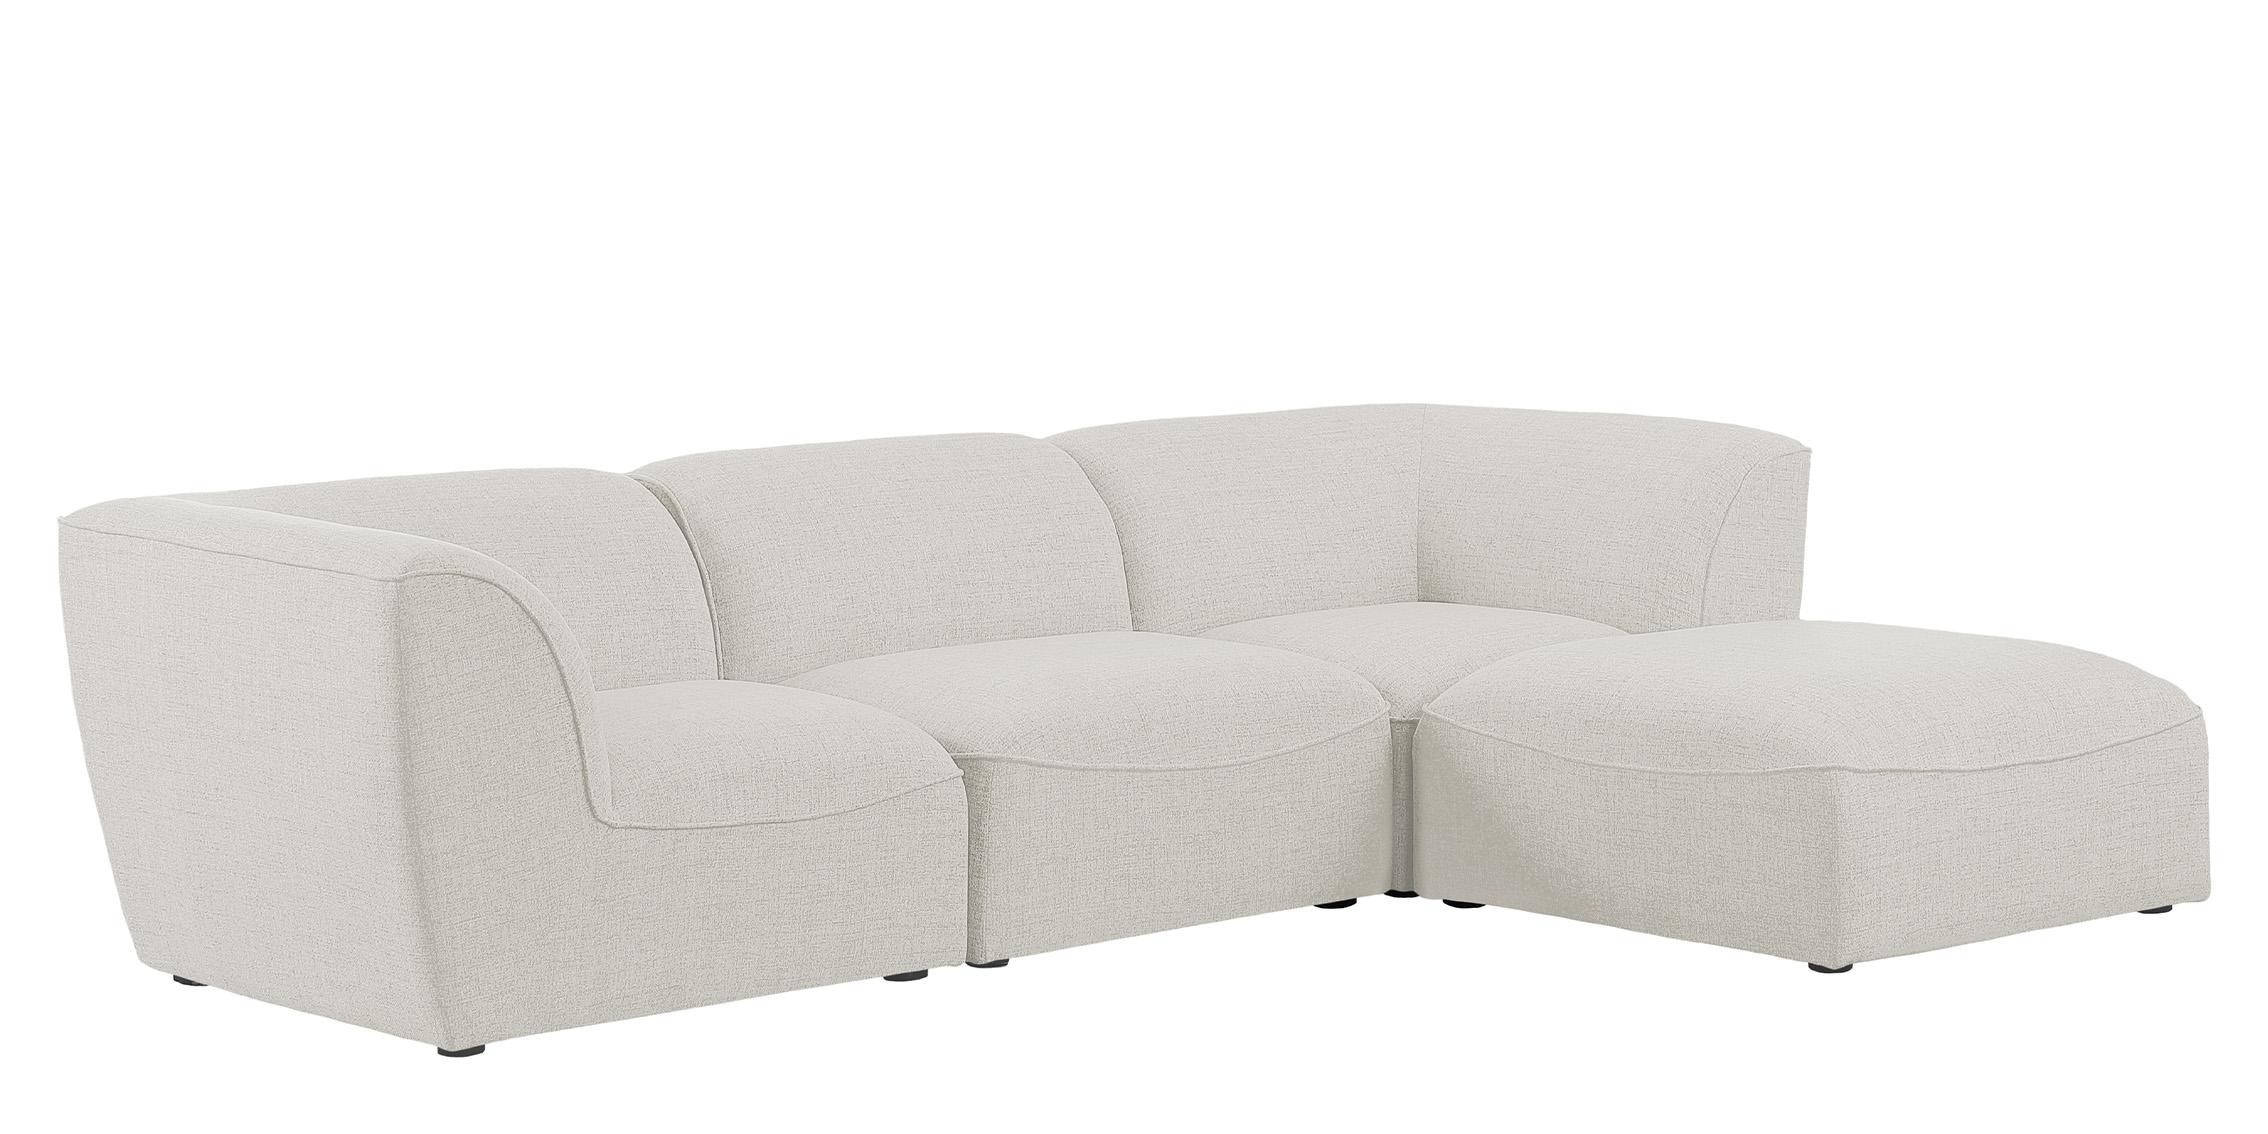 Contemporary, Modern Modular Sectional Sofa MIRAMAR 683Cream-Sec4A 683Cream-Sec4A in Cream Linen